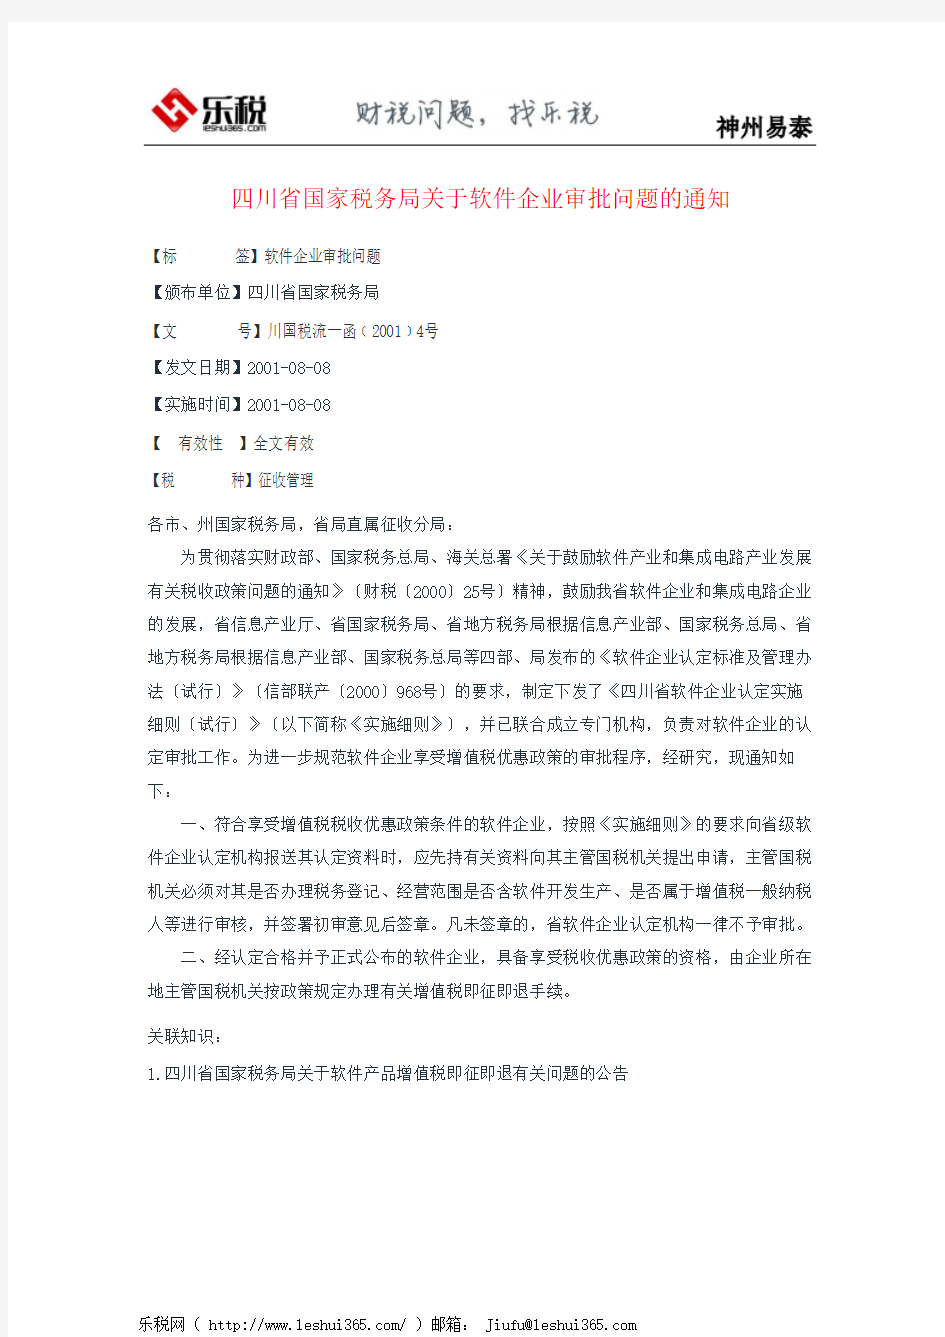 四川省国家税务局关于软件企业审批问题的通知